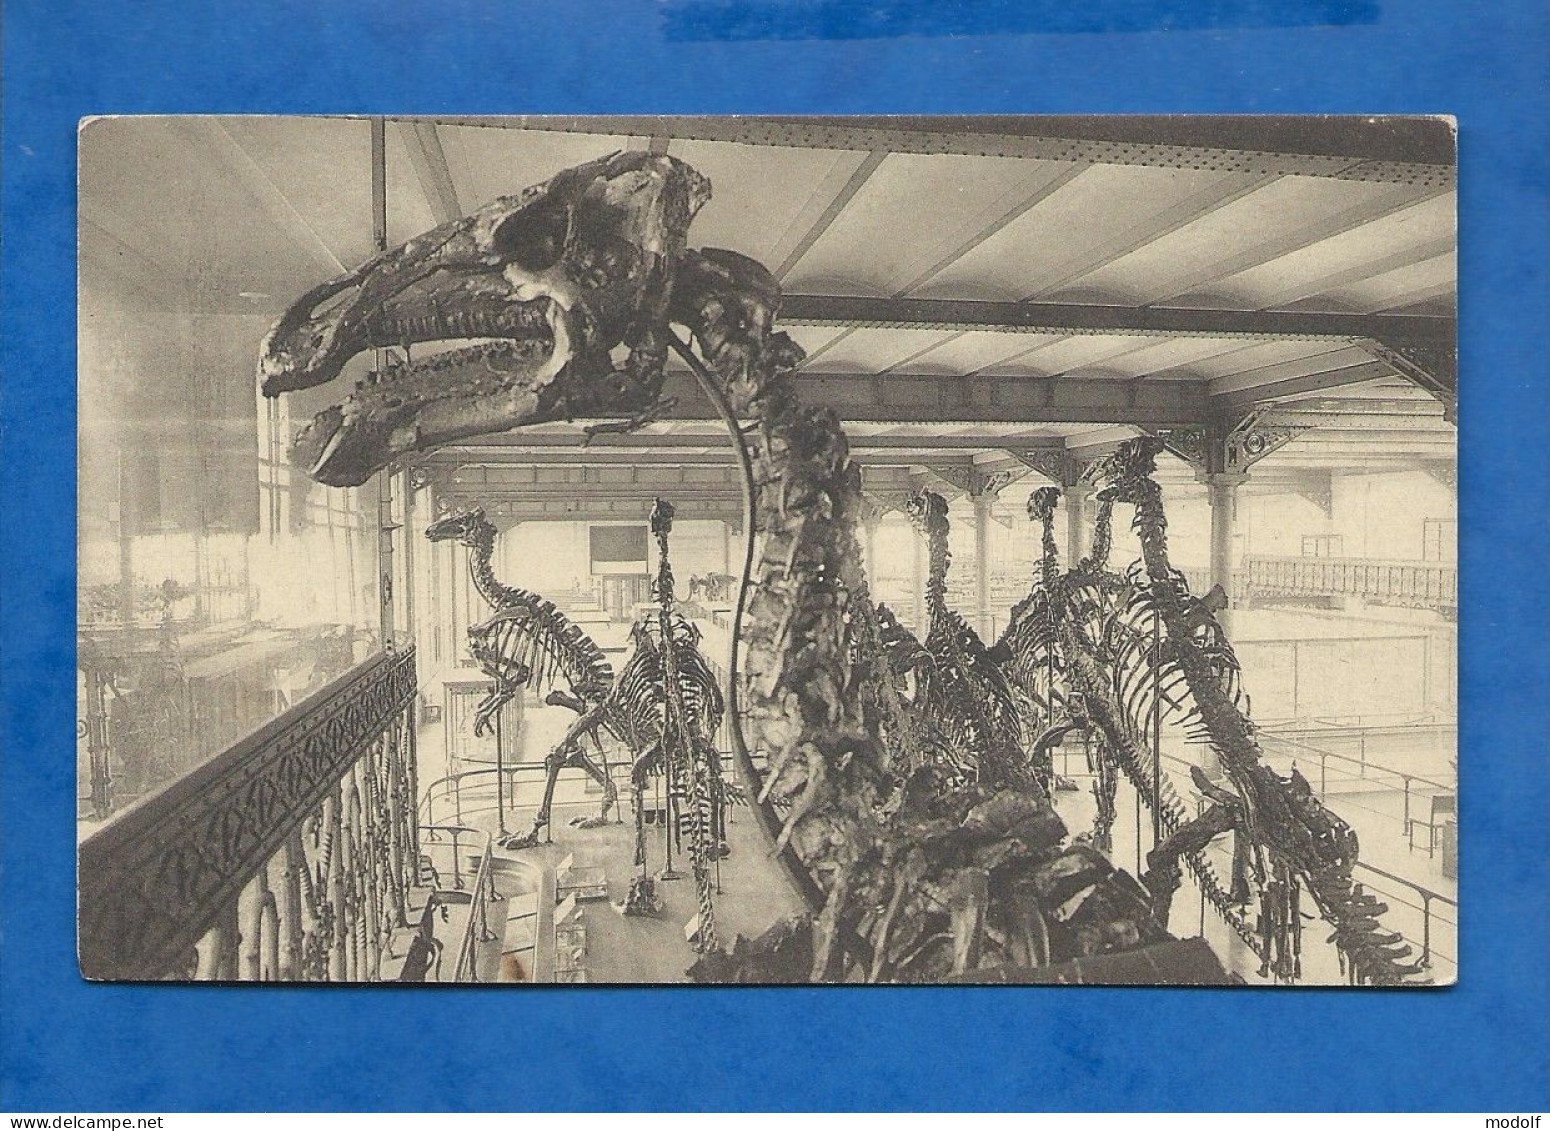 CPA - Musée Royal D'Histoire Naturelle - Bruxelles - Galeries Nationales - Salle Des Vertébrés - Iguanodons - Non Circul - Musées